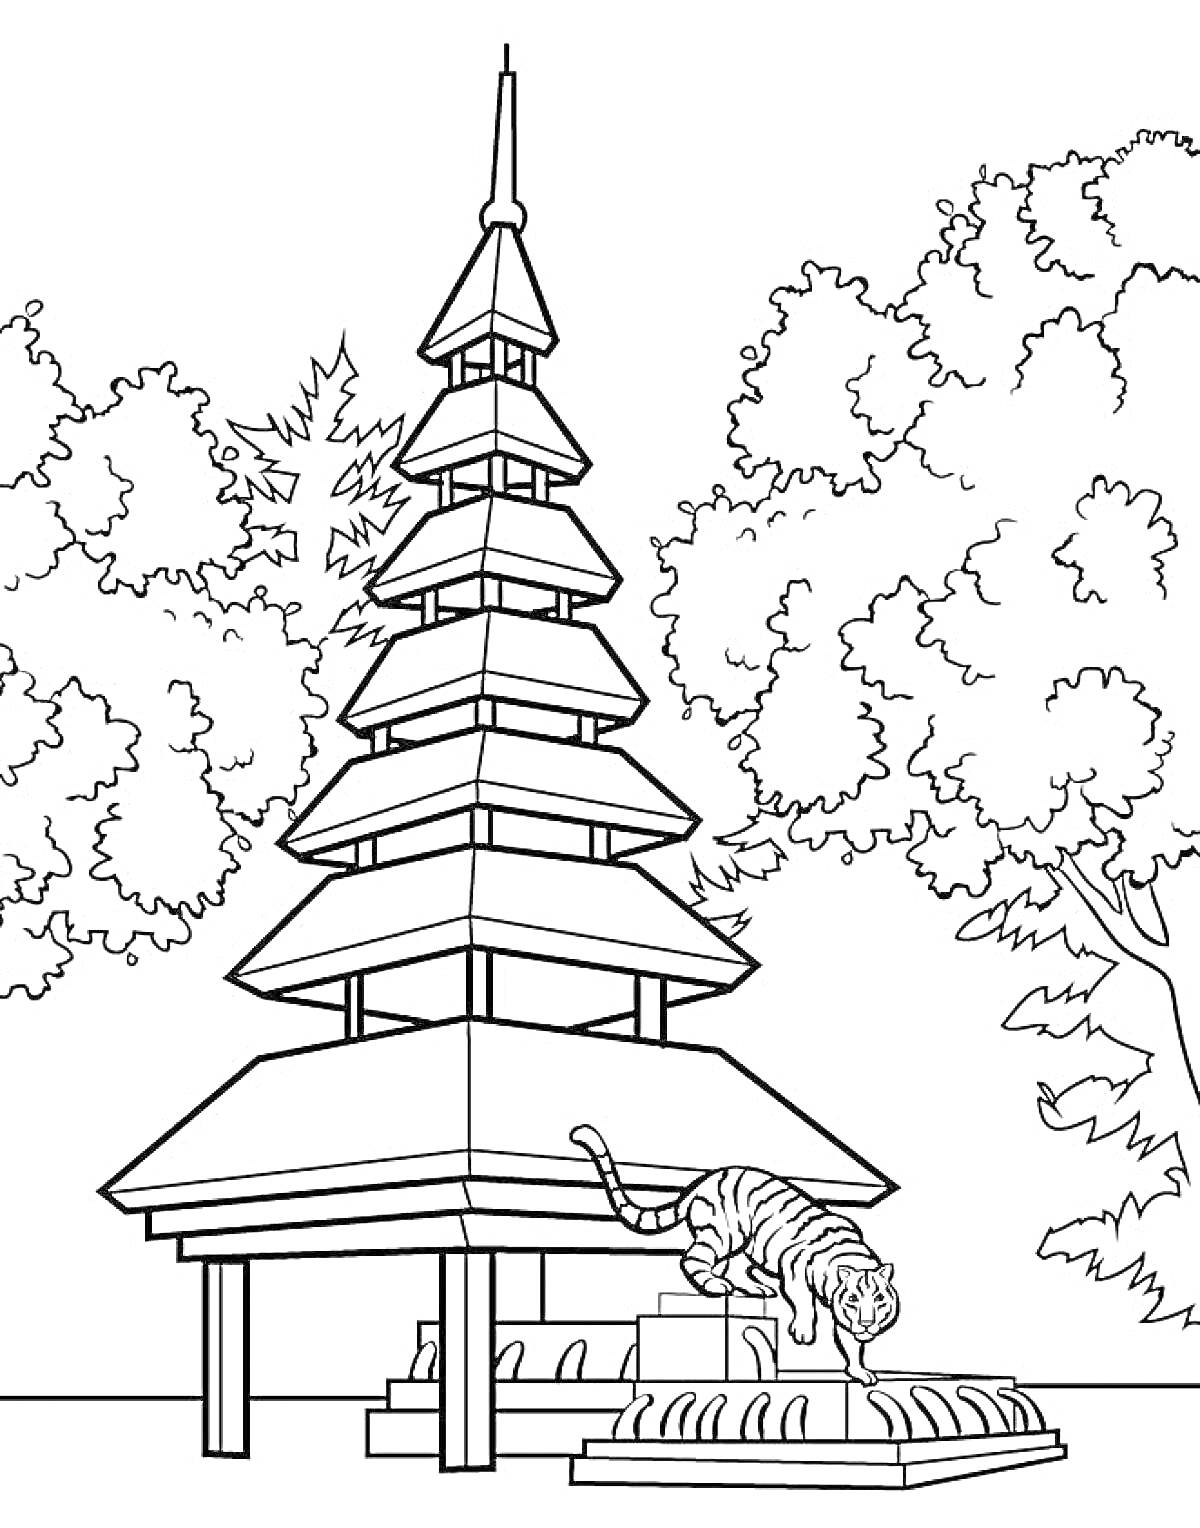 Пагода и тигр у фонтана, окруженные деревьями